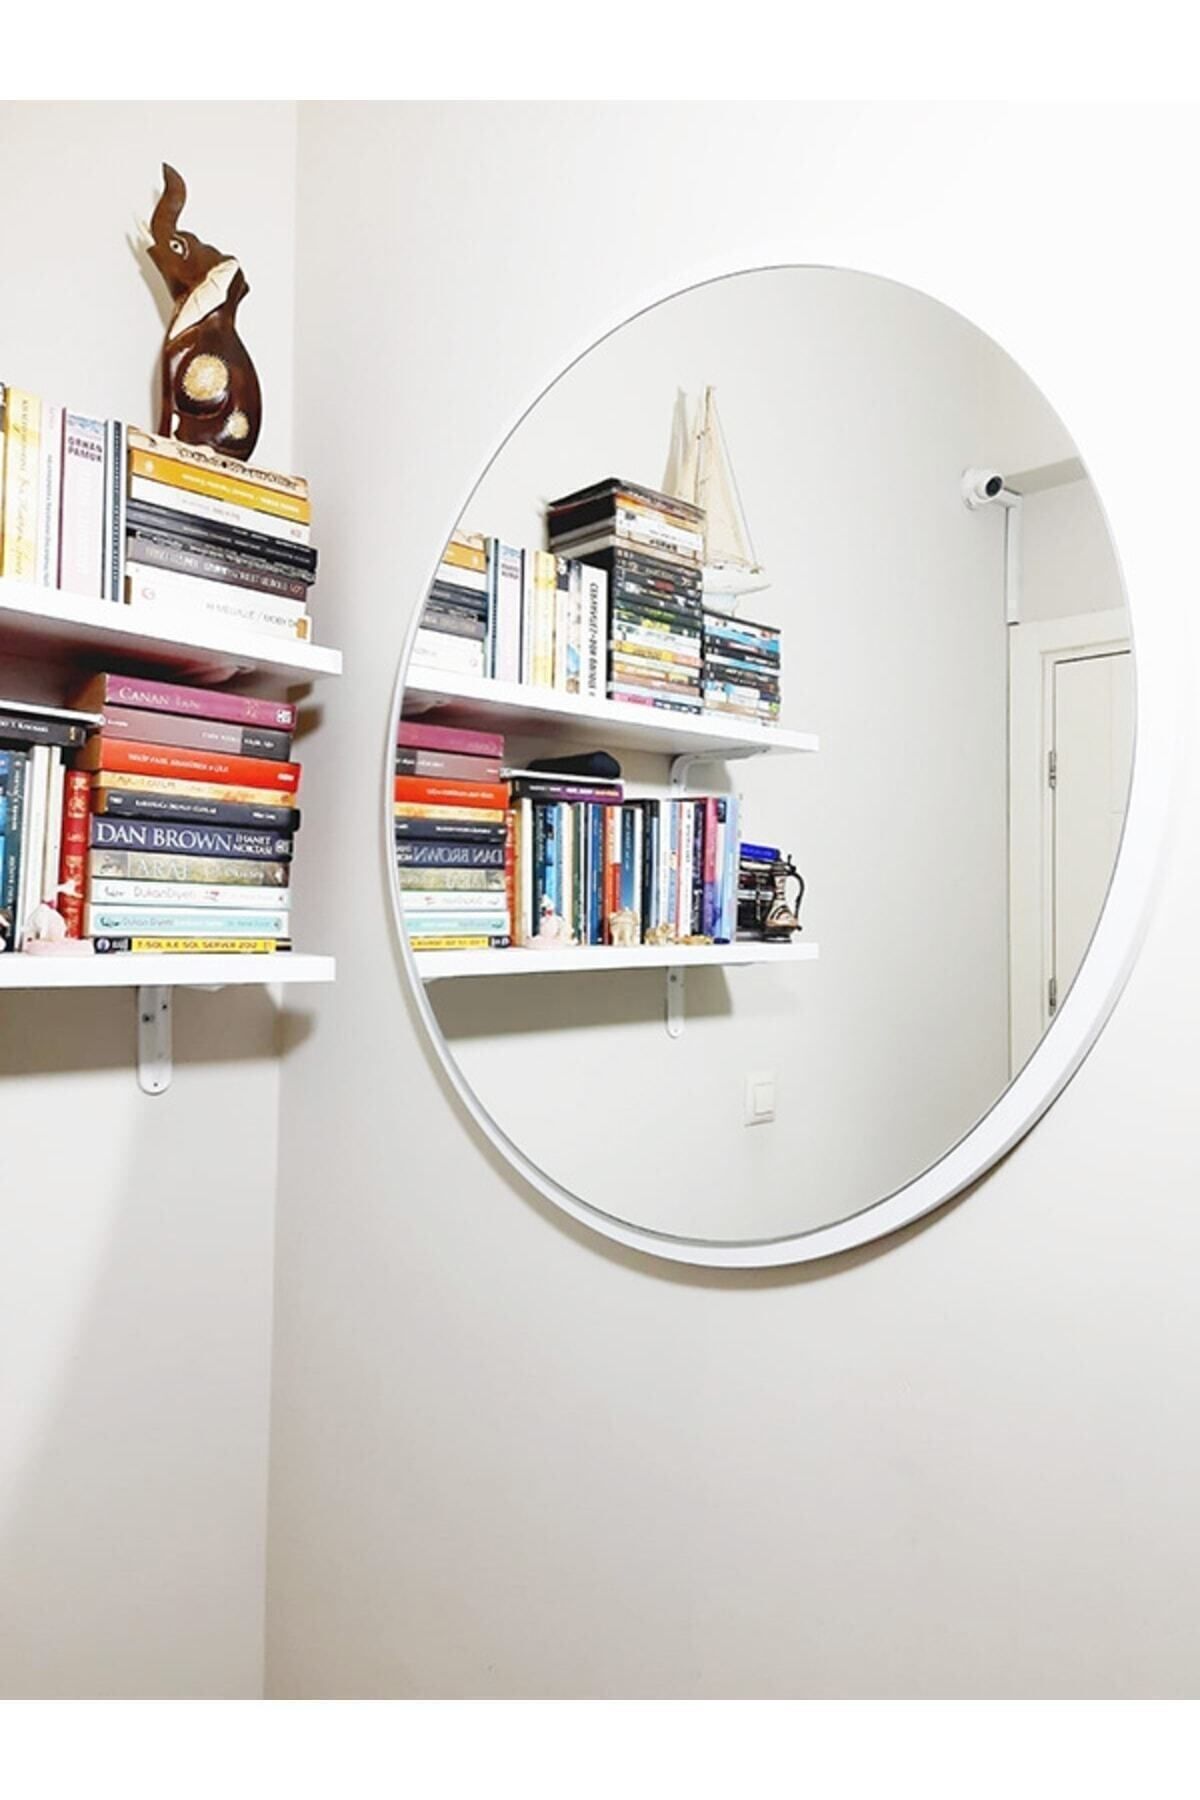 Rose Tasarım Beyaz Dekoratif Yuvarlak Ayna Salon Duvar Koridor Yatak Odası Aynası Estetik Tasarım Ofis Ayna 45 Cm